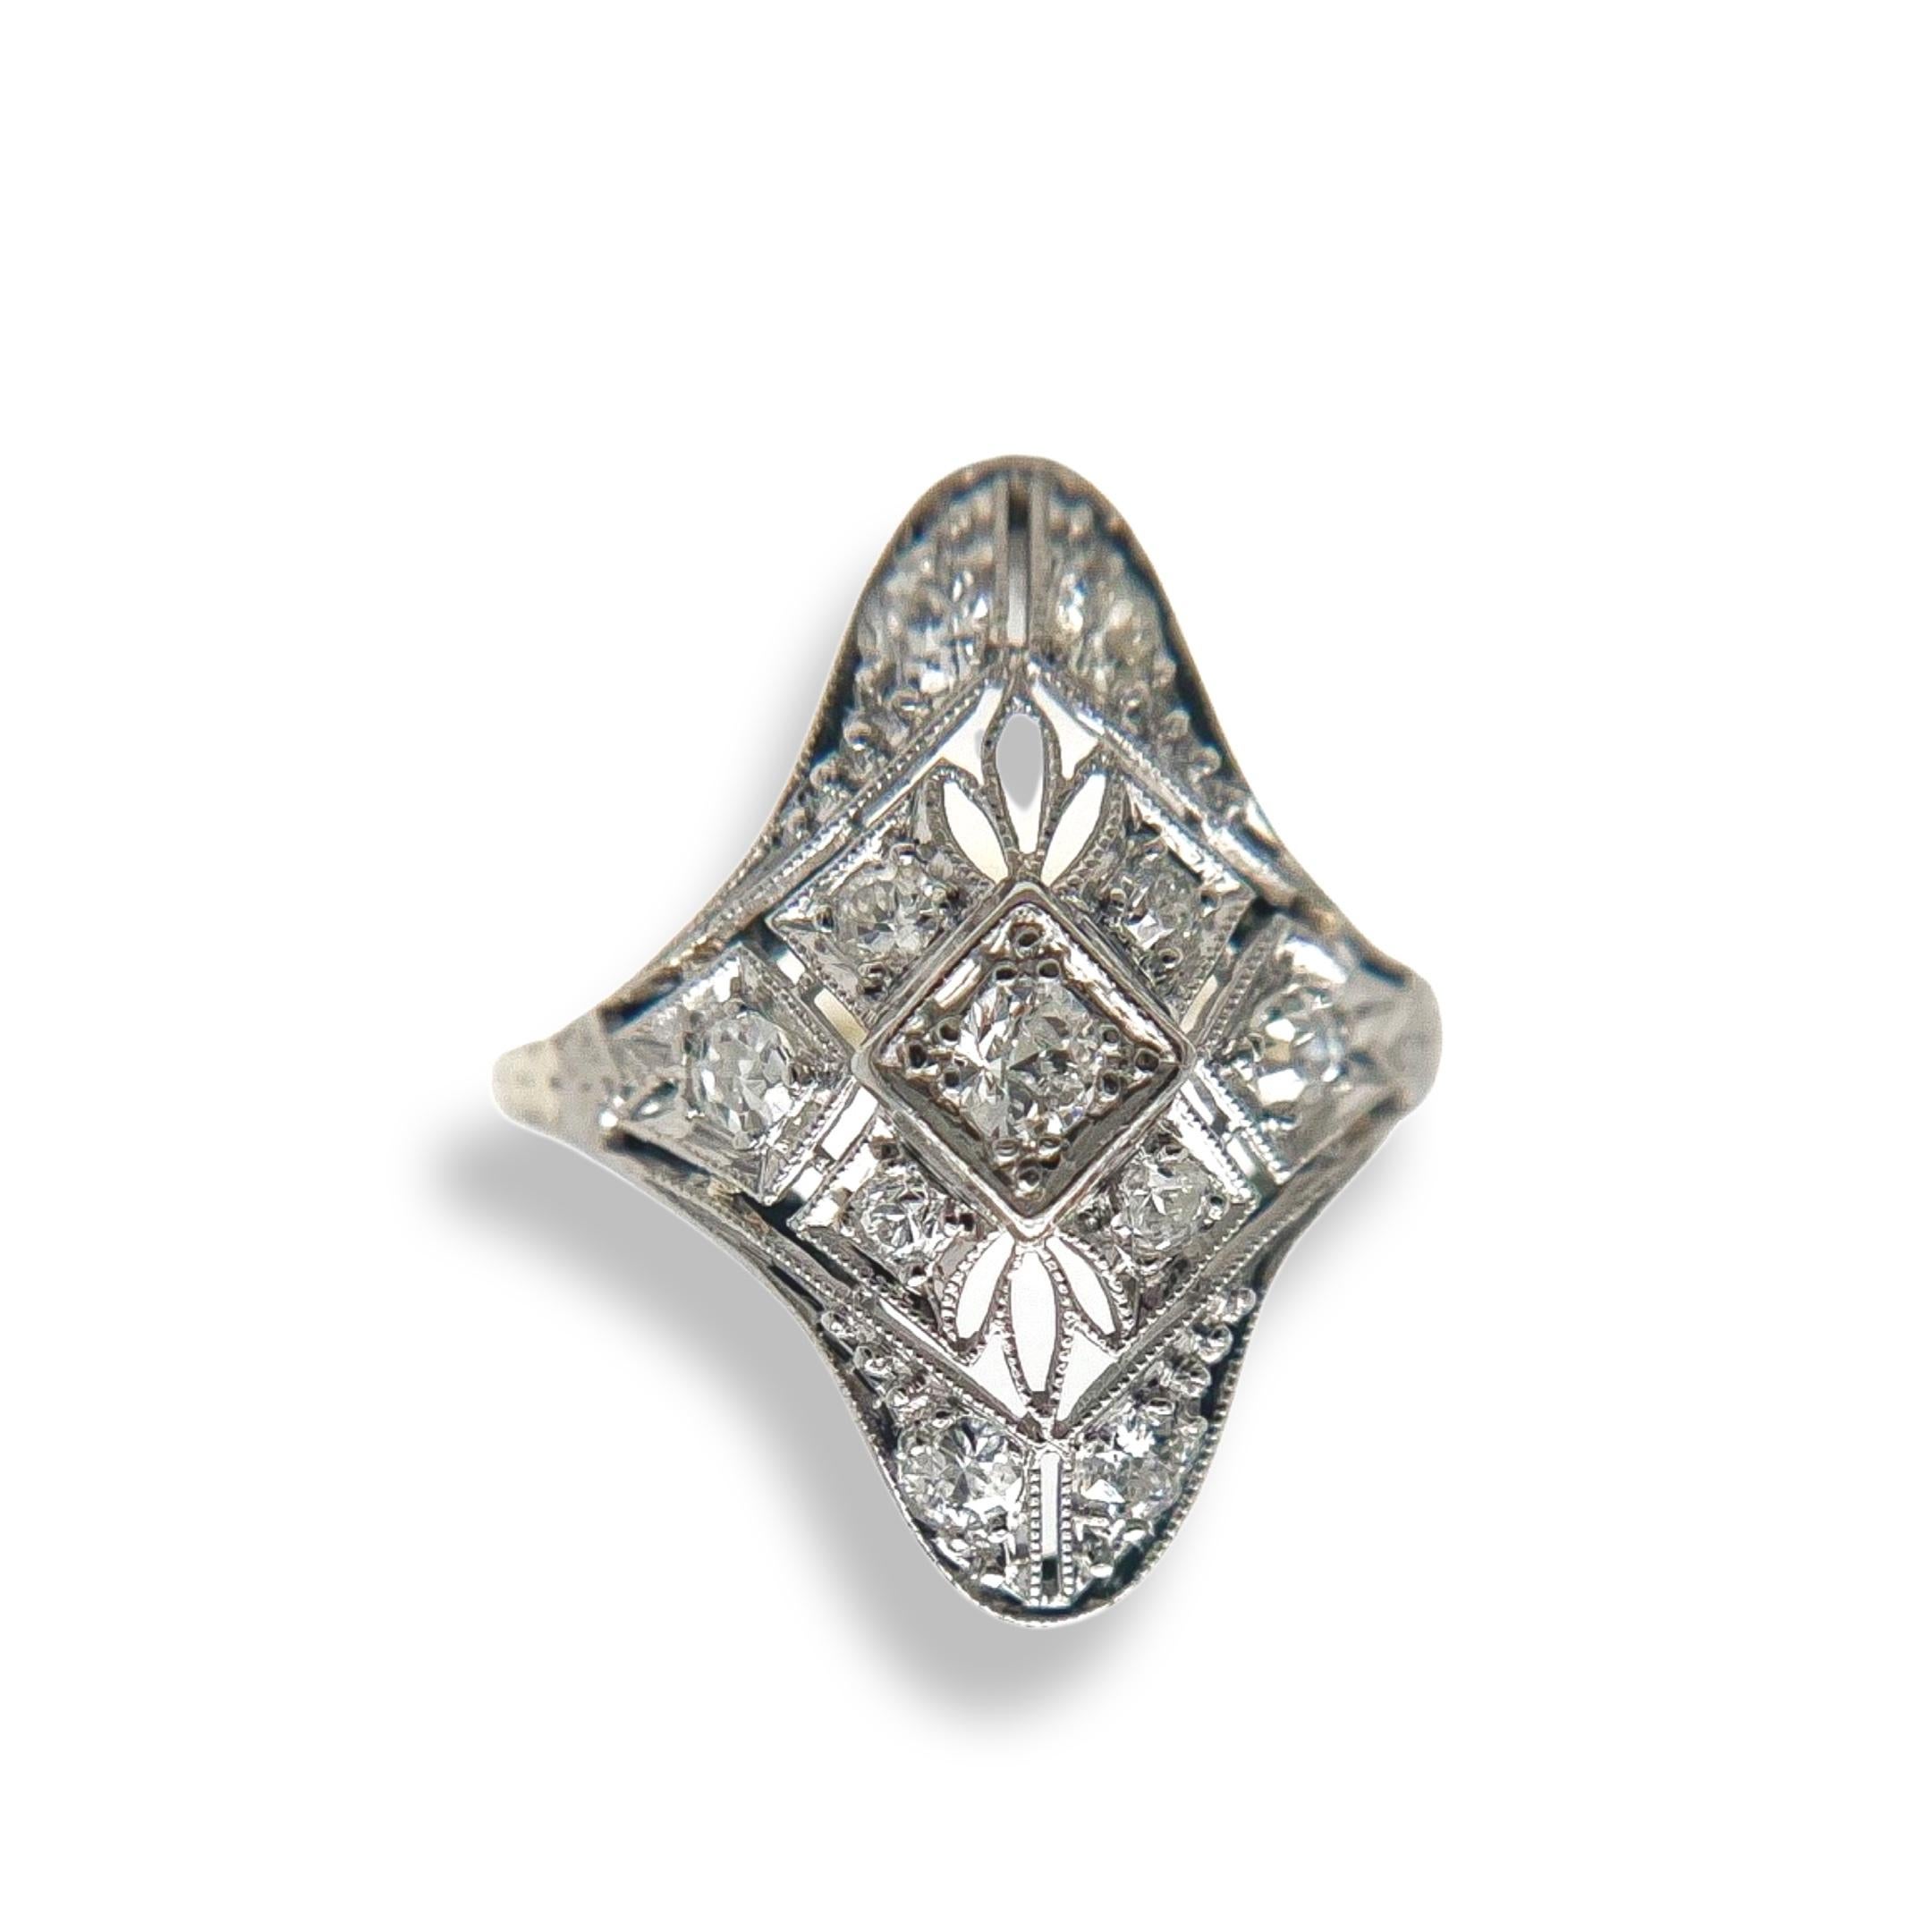 Cette bague ancienne en diamant a été fabriquée à la main au cours de la période de conception édouardienne (1900-1920). La monture en or blanc 14 carats présente un filigrane complexe, des accents de milgrain précis et de magnifiques gravures à la